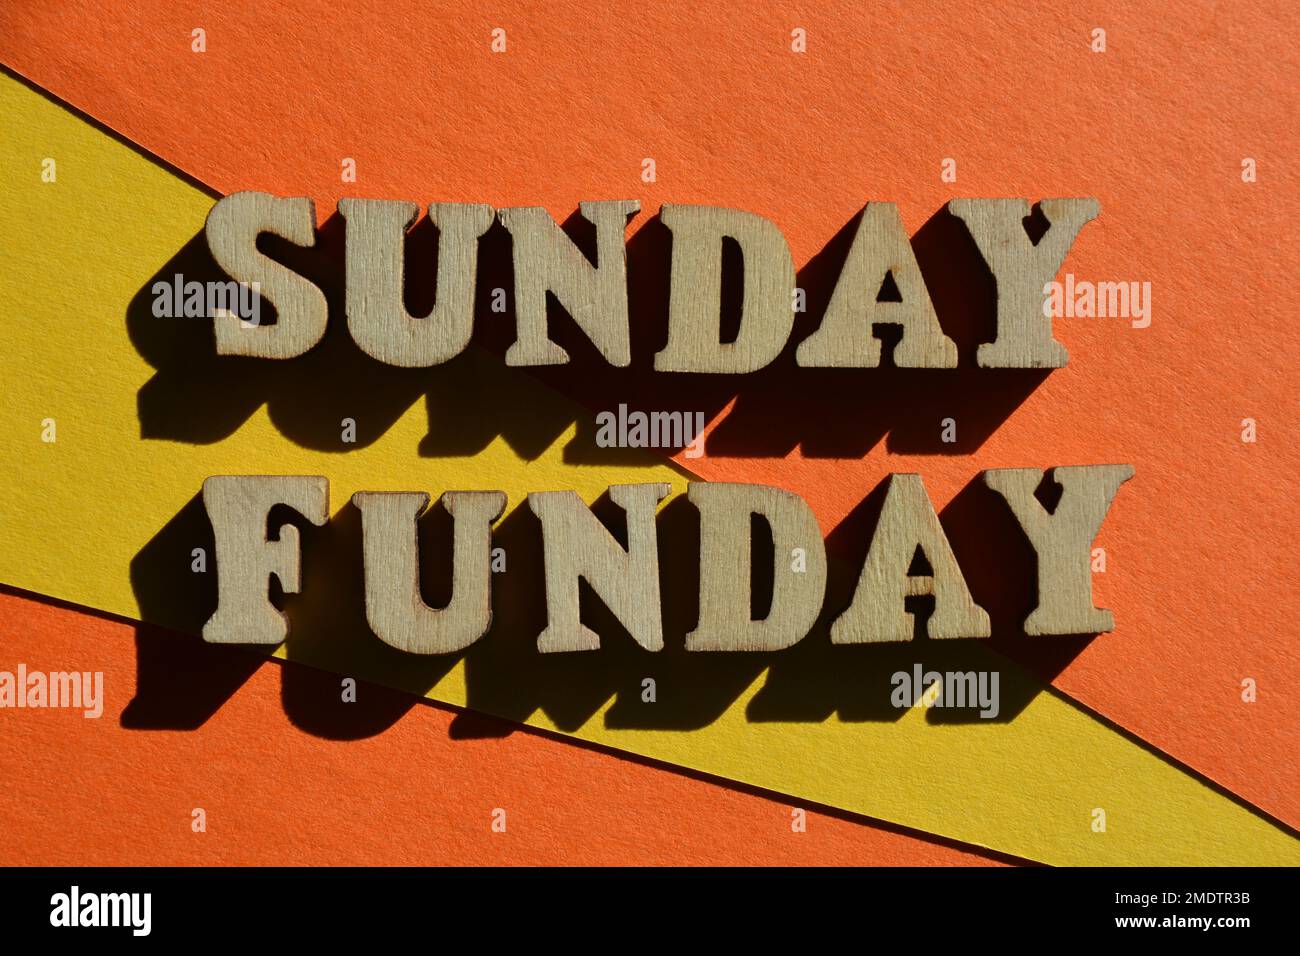 Sunday Funday, parole in lettere alfabetiche di legno isolate su sfondo giallo e arancione Foto Stock